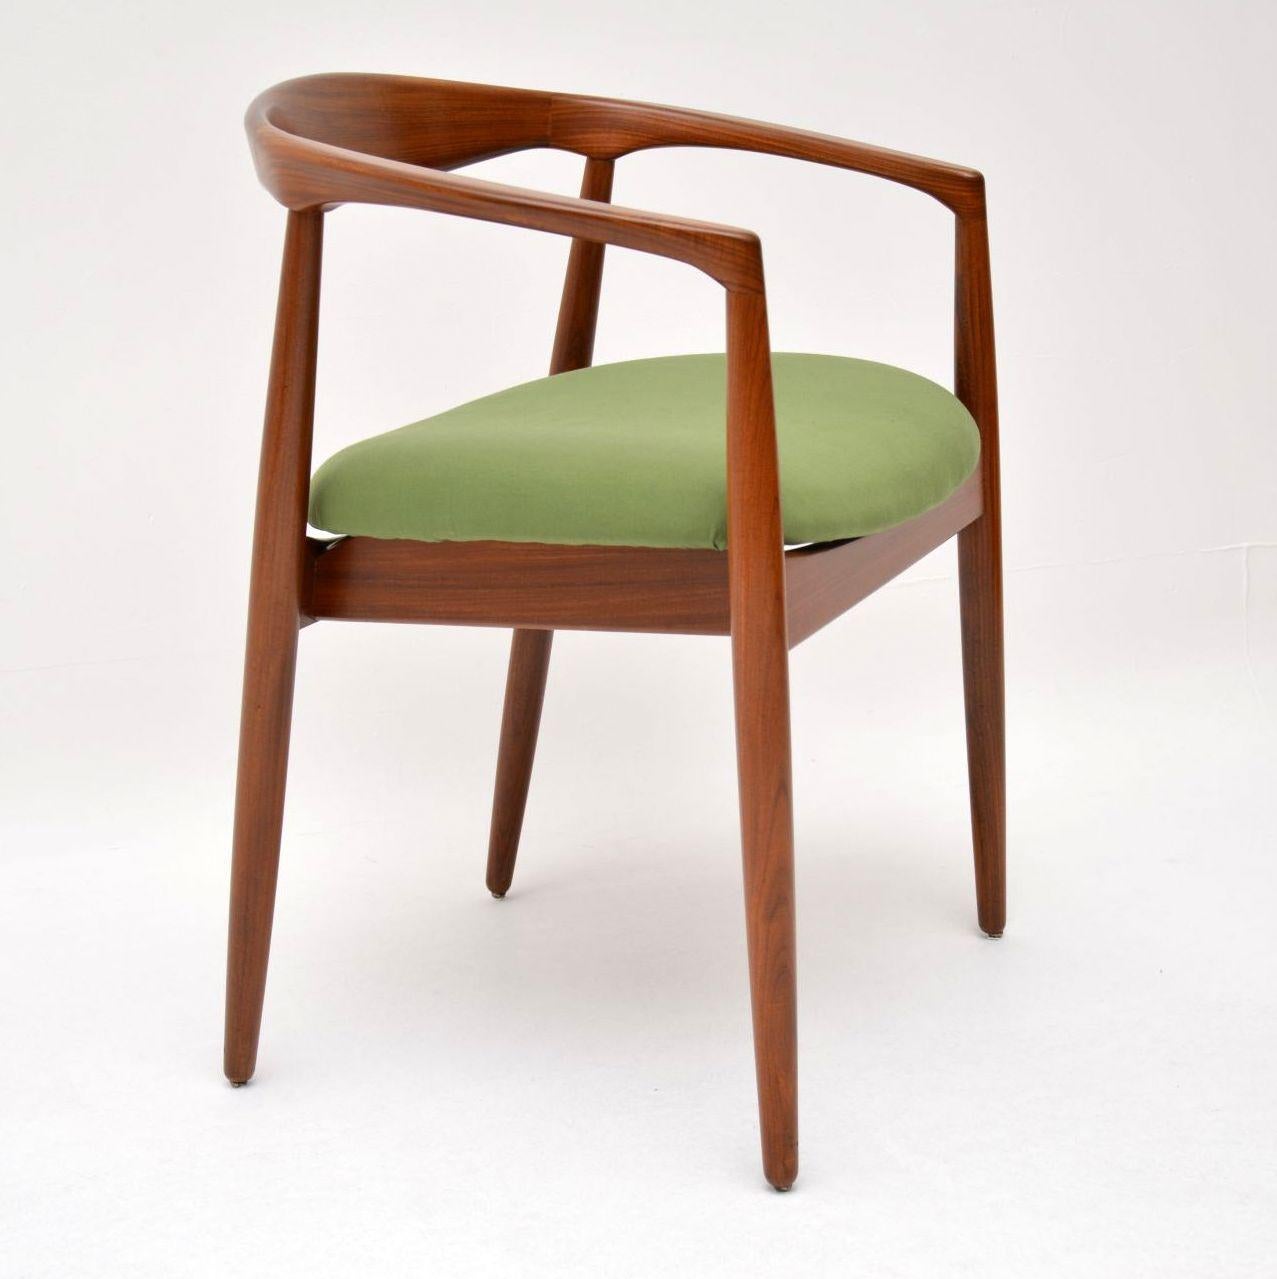 Mid-20th Century 1960’s Danish “Troja” Chair by Kai Kristiansen